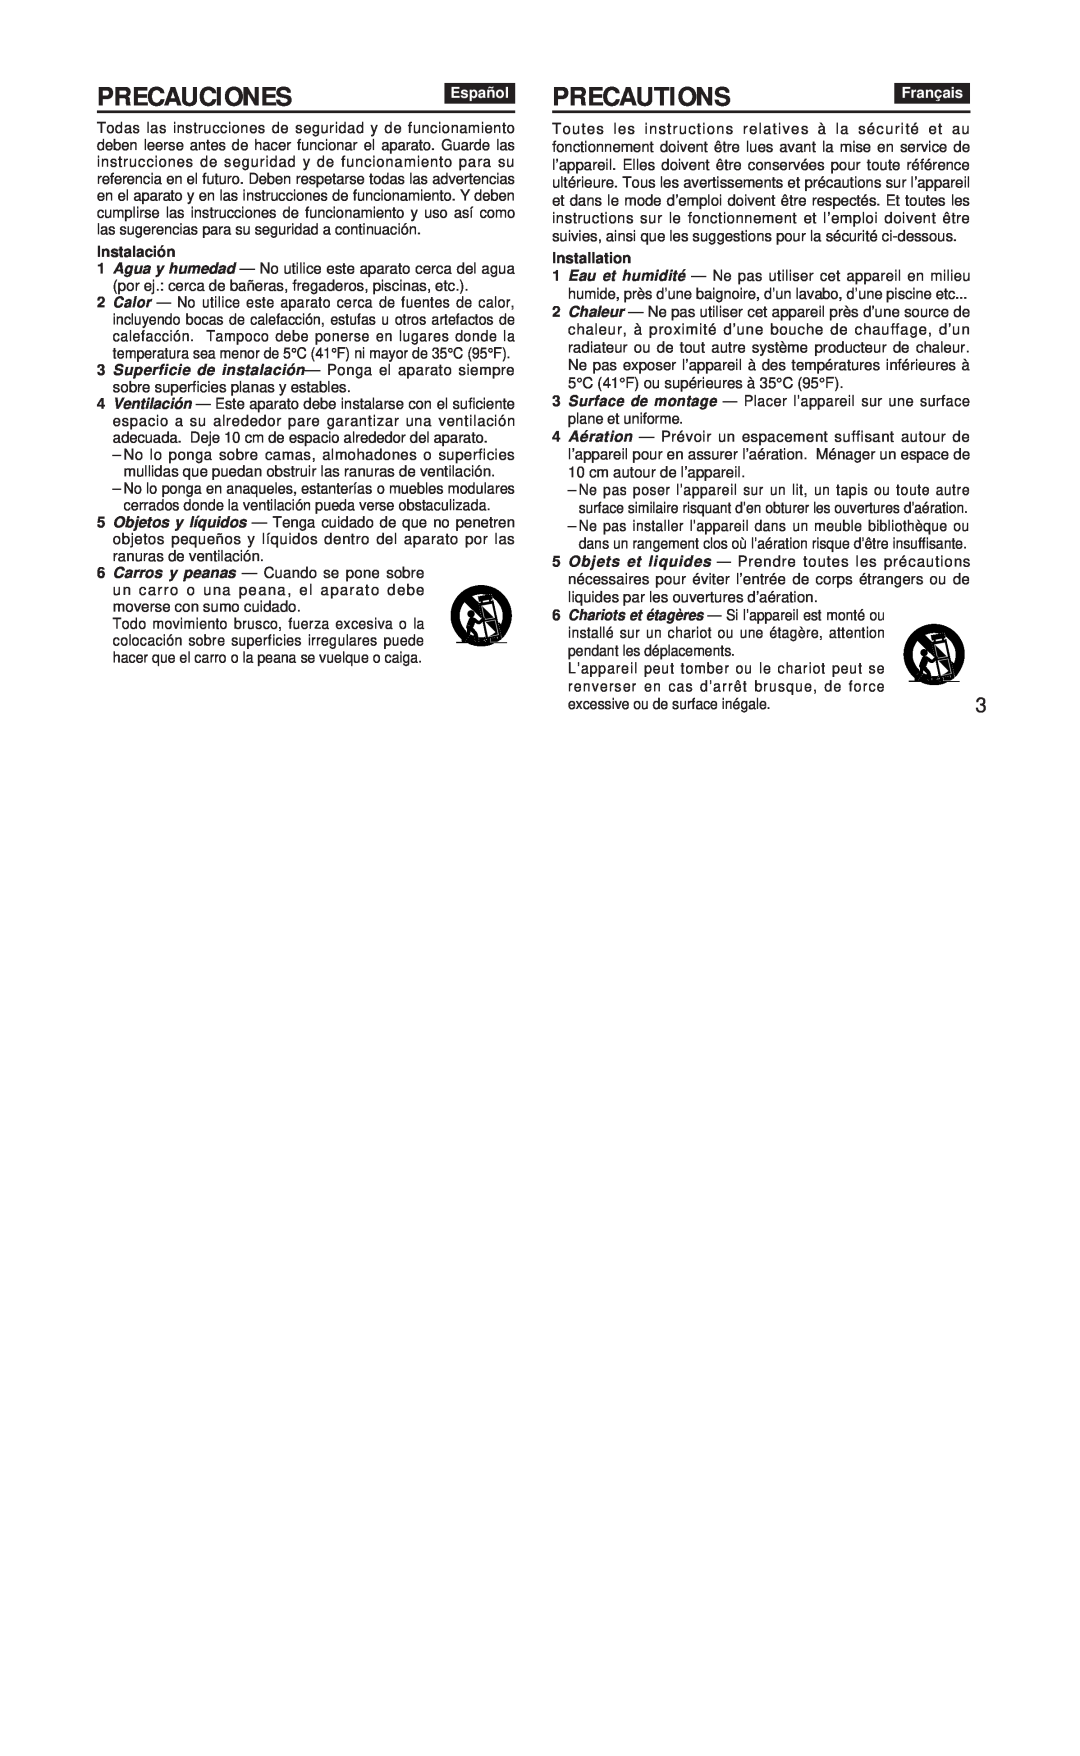 Aiwa FR-CD1500 manual Precauciones, Precautions, Español, Français, Instalación, Installation 